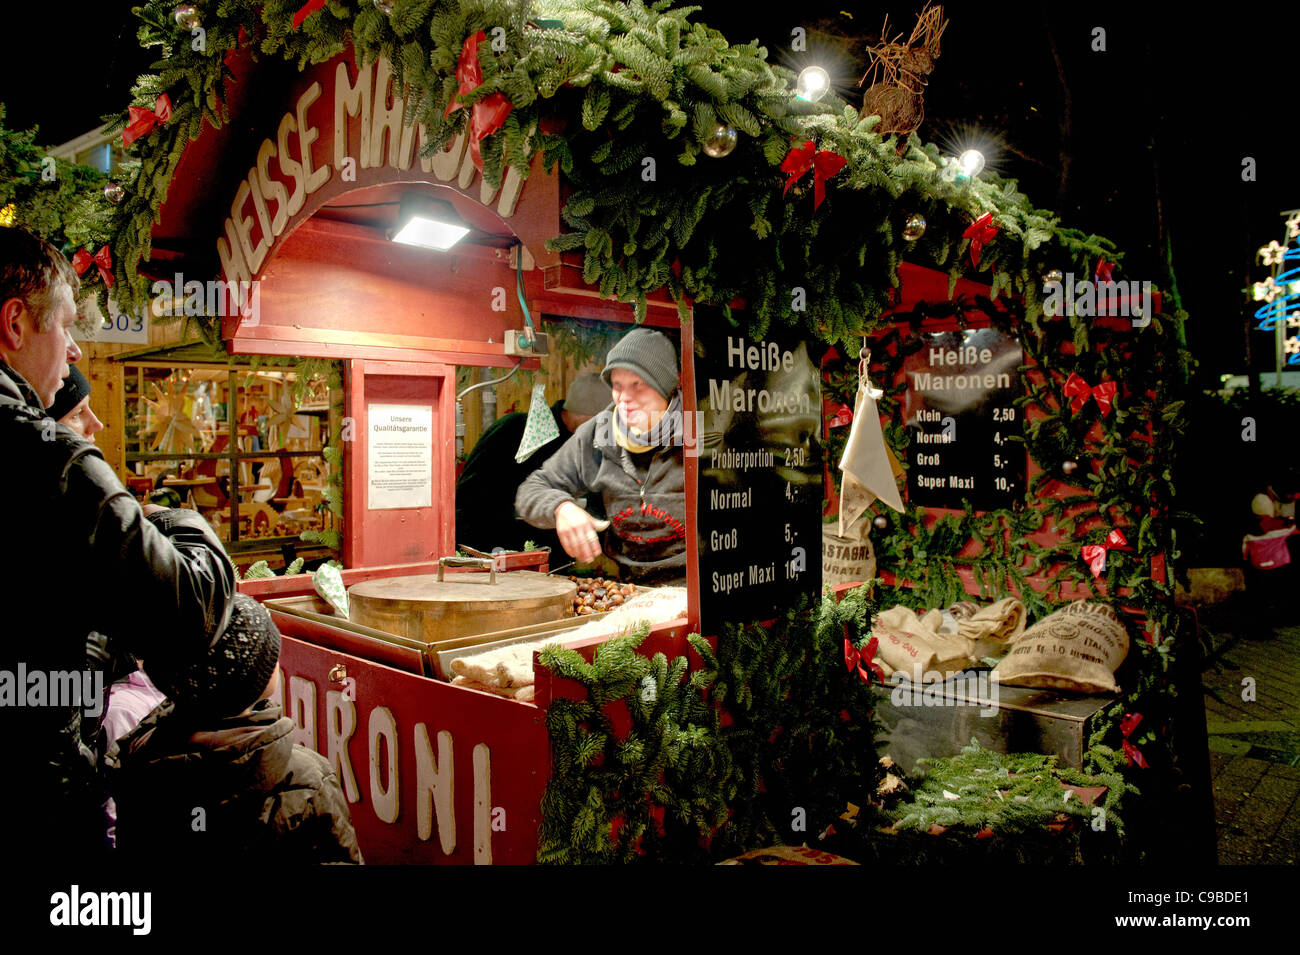 Weihnachtsmarkt in Deutschland; Christmas Market in Germany Stock Photo